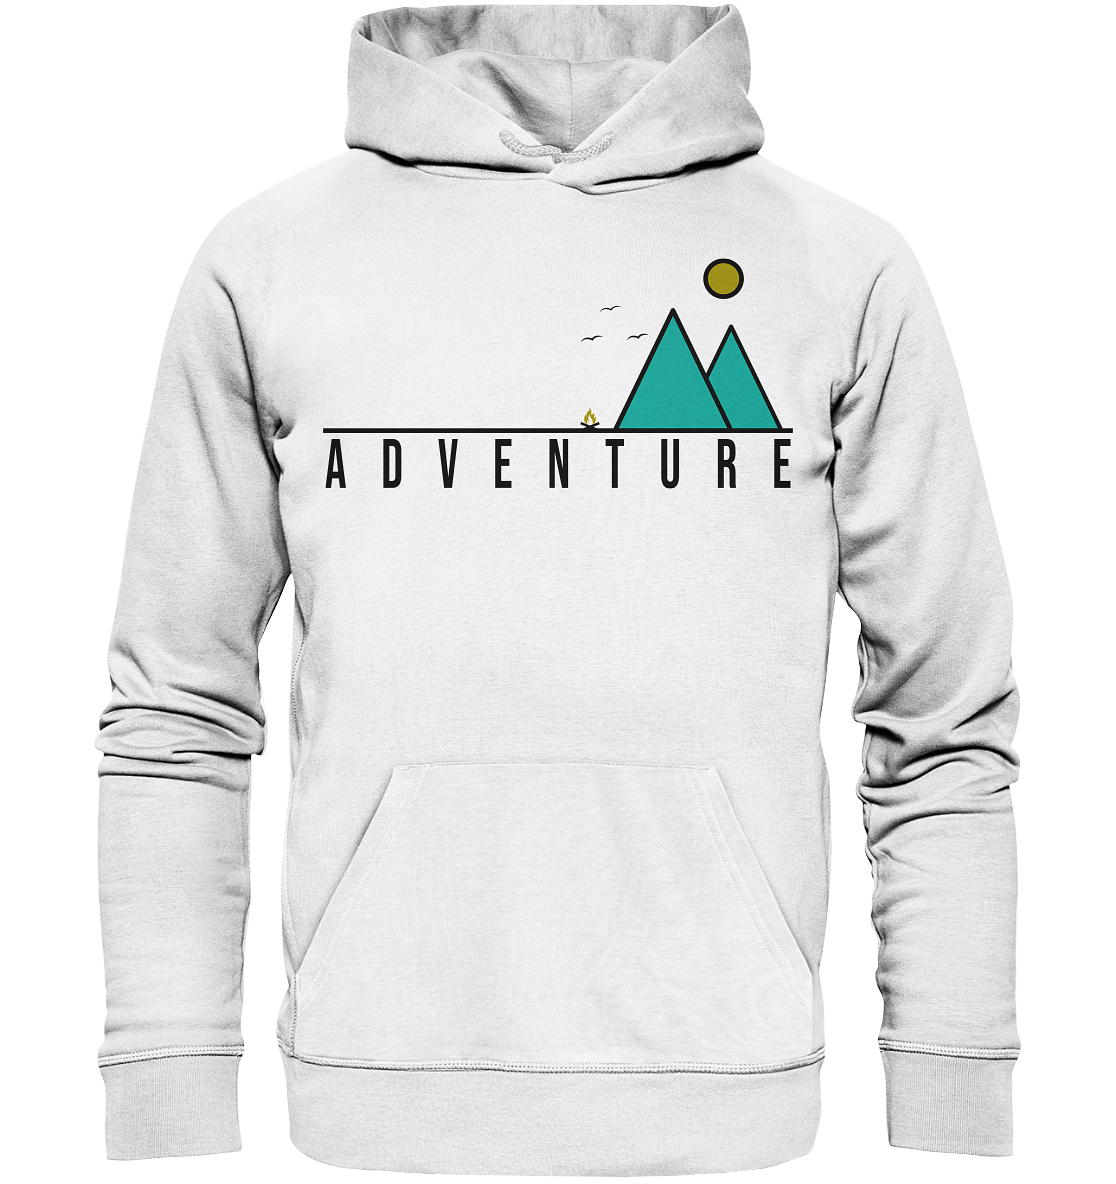 Adventure - Organic Hoodie